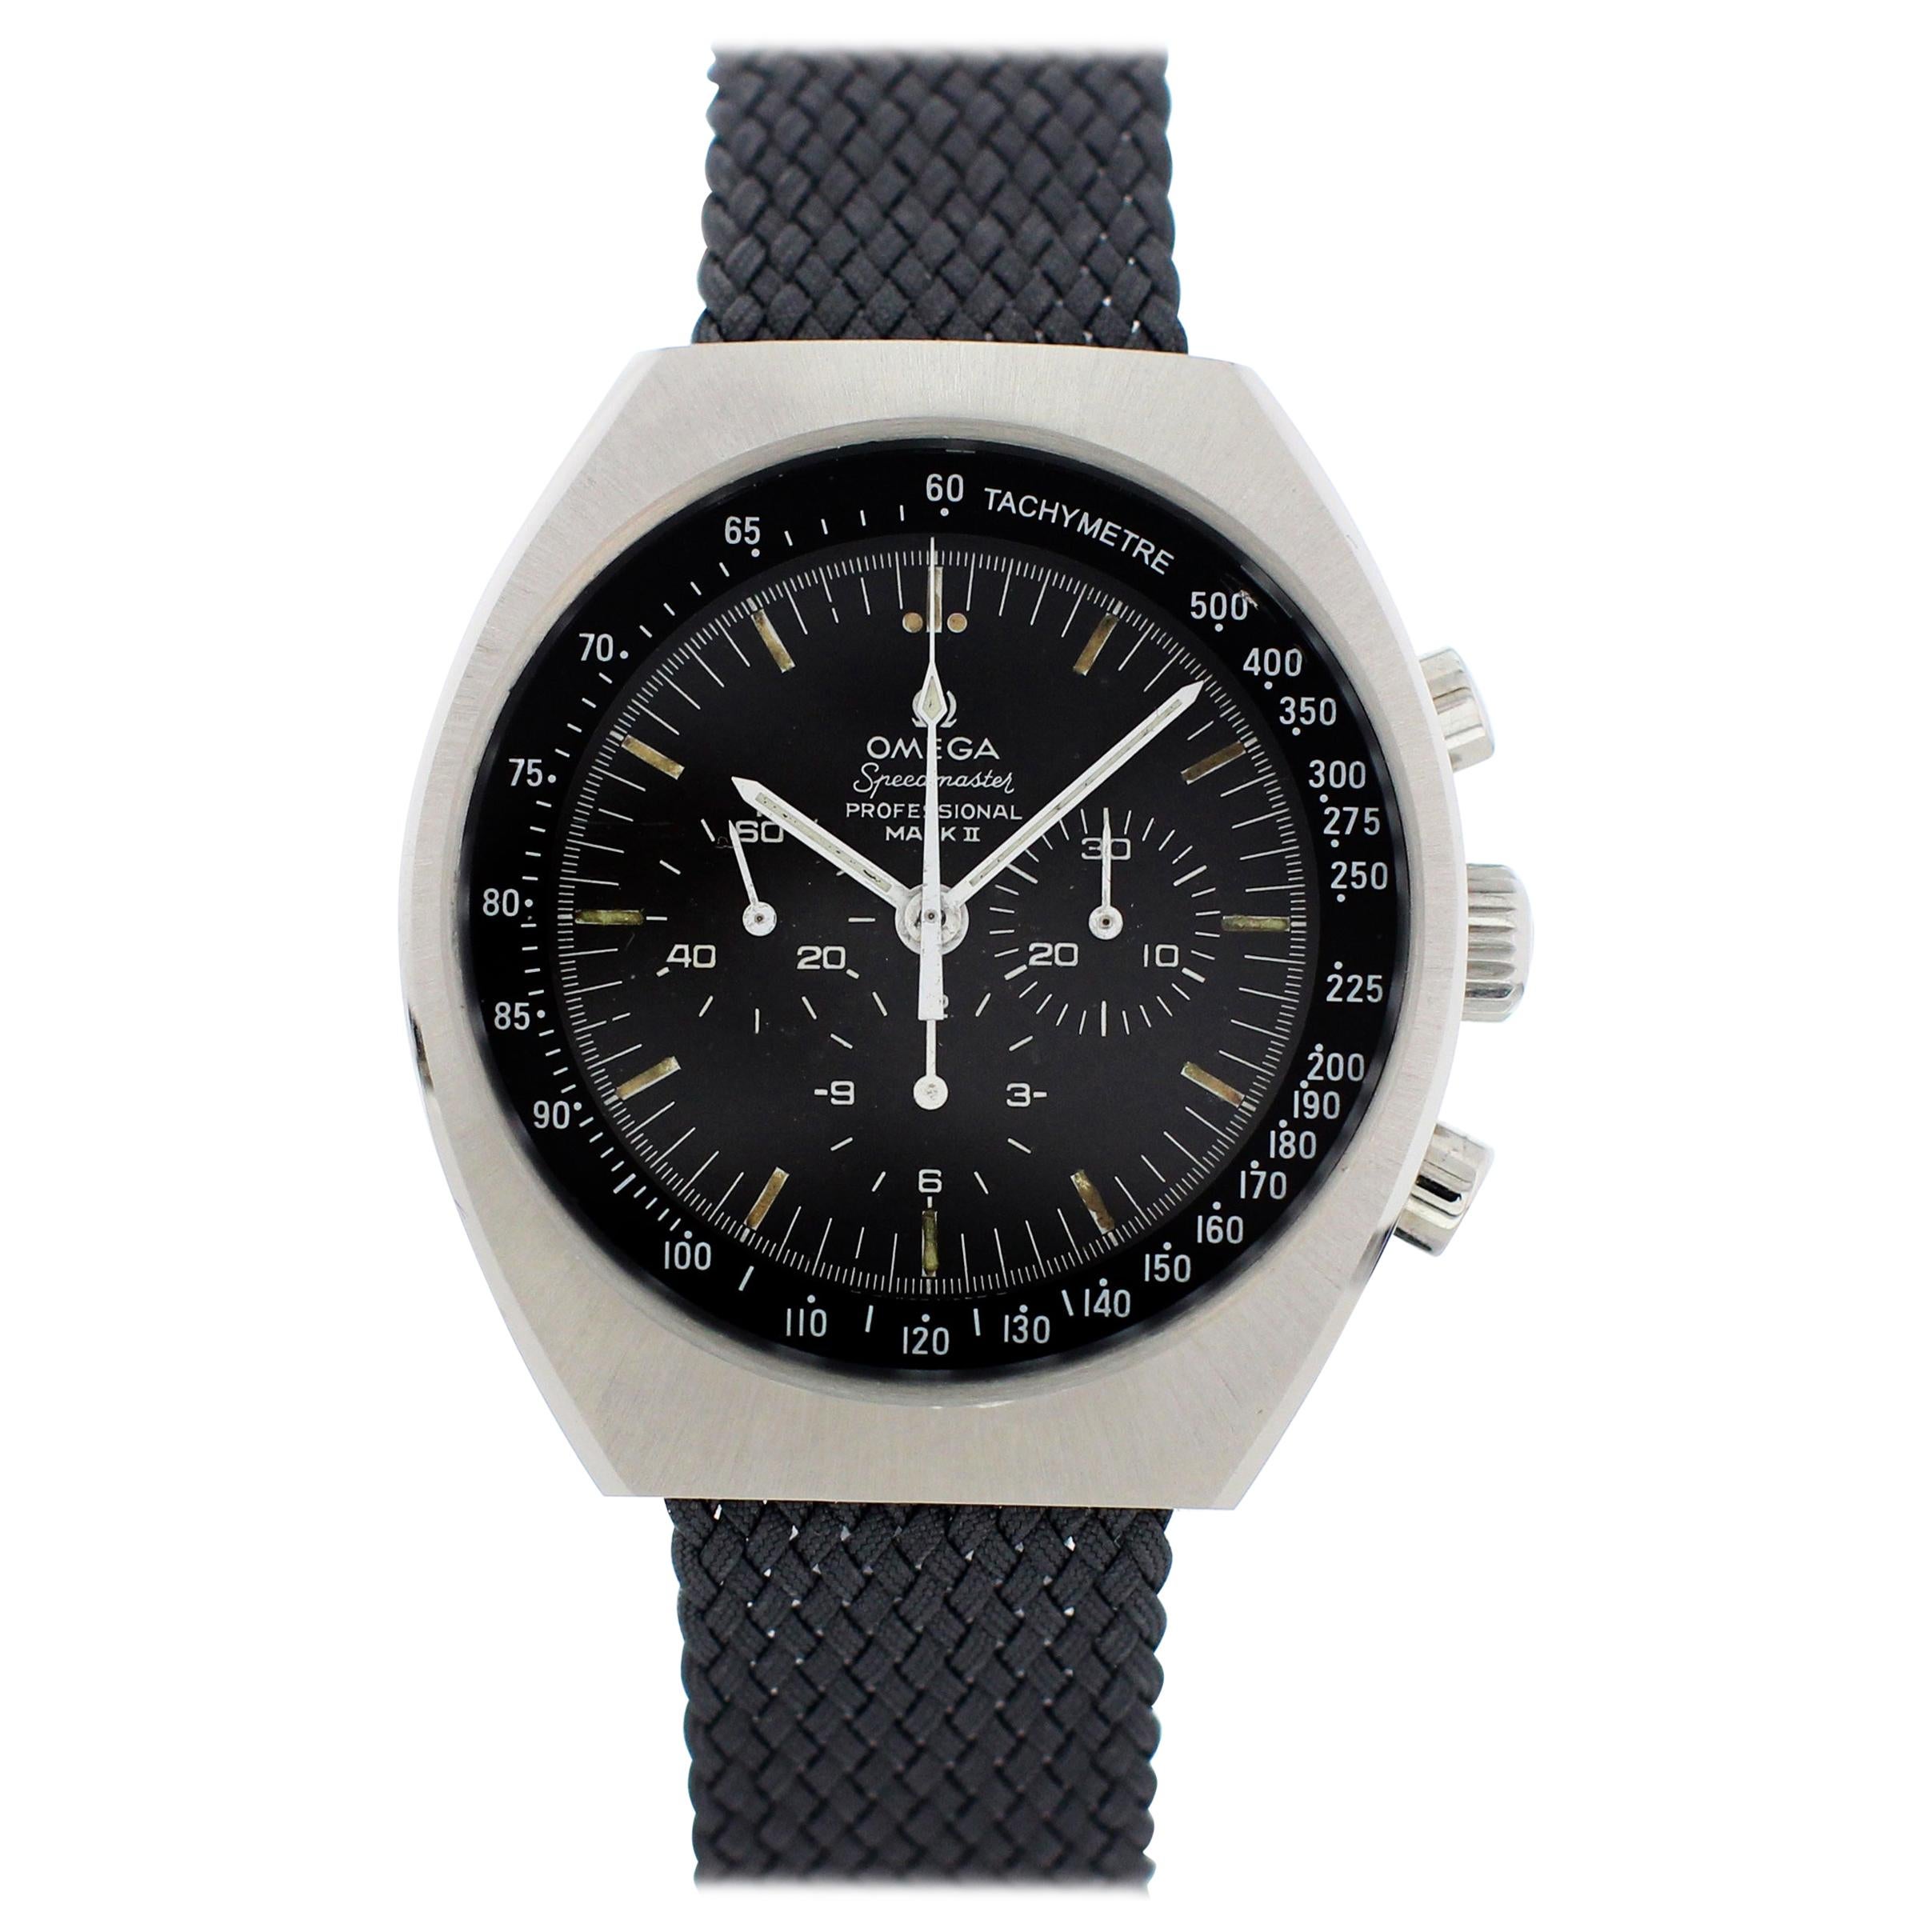 Omega Speedmaster Professional Mark II 145.014 Vintage Men’s Watch For Sale